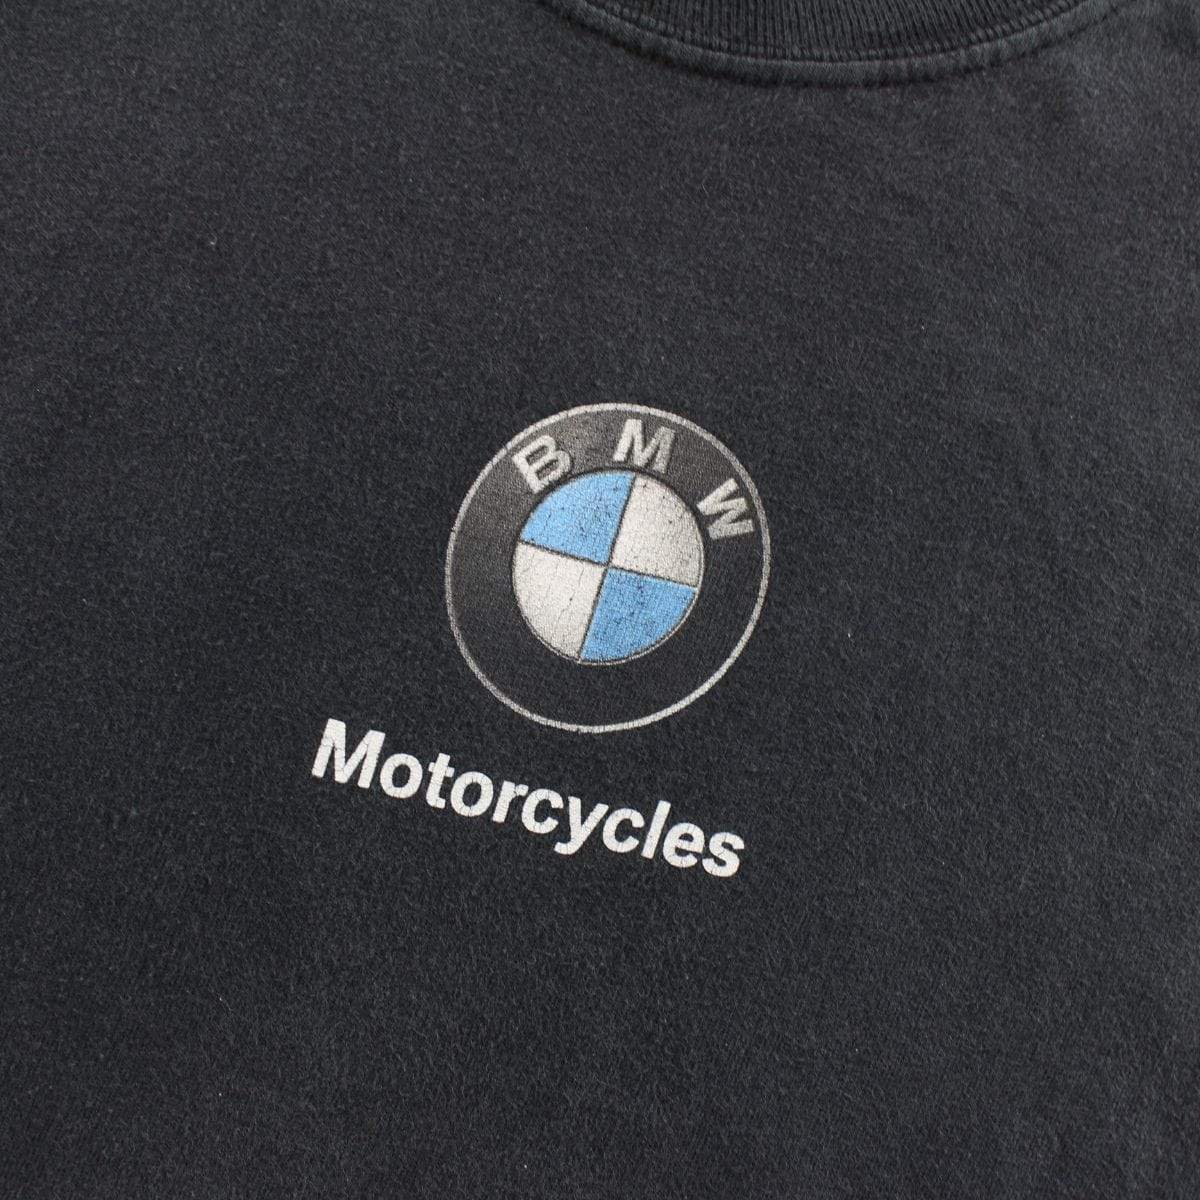 BMW Motorcycles Tee Black - SaruGeneral